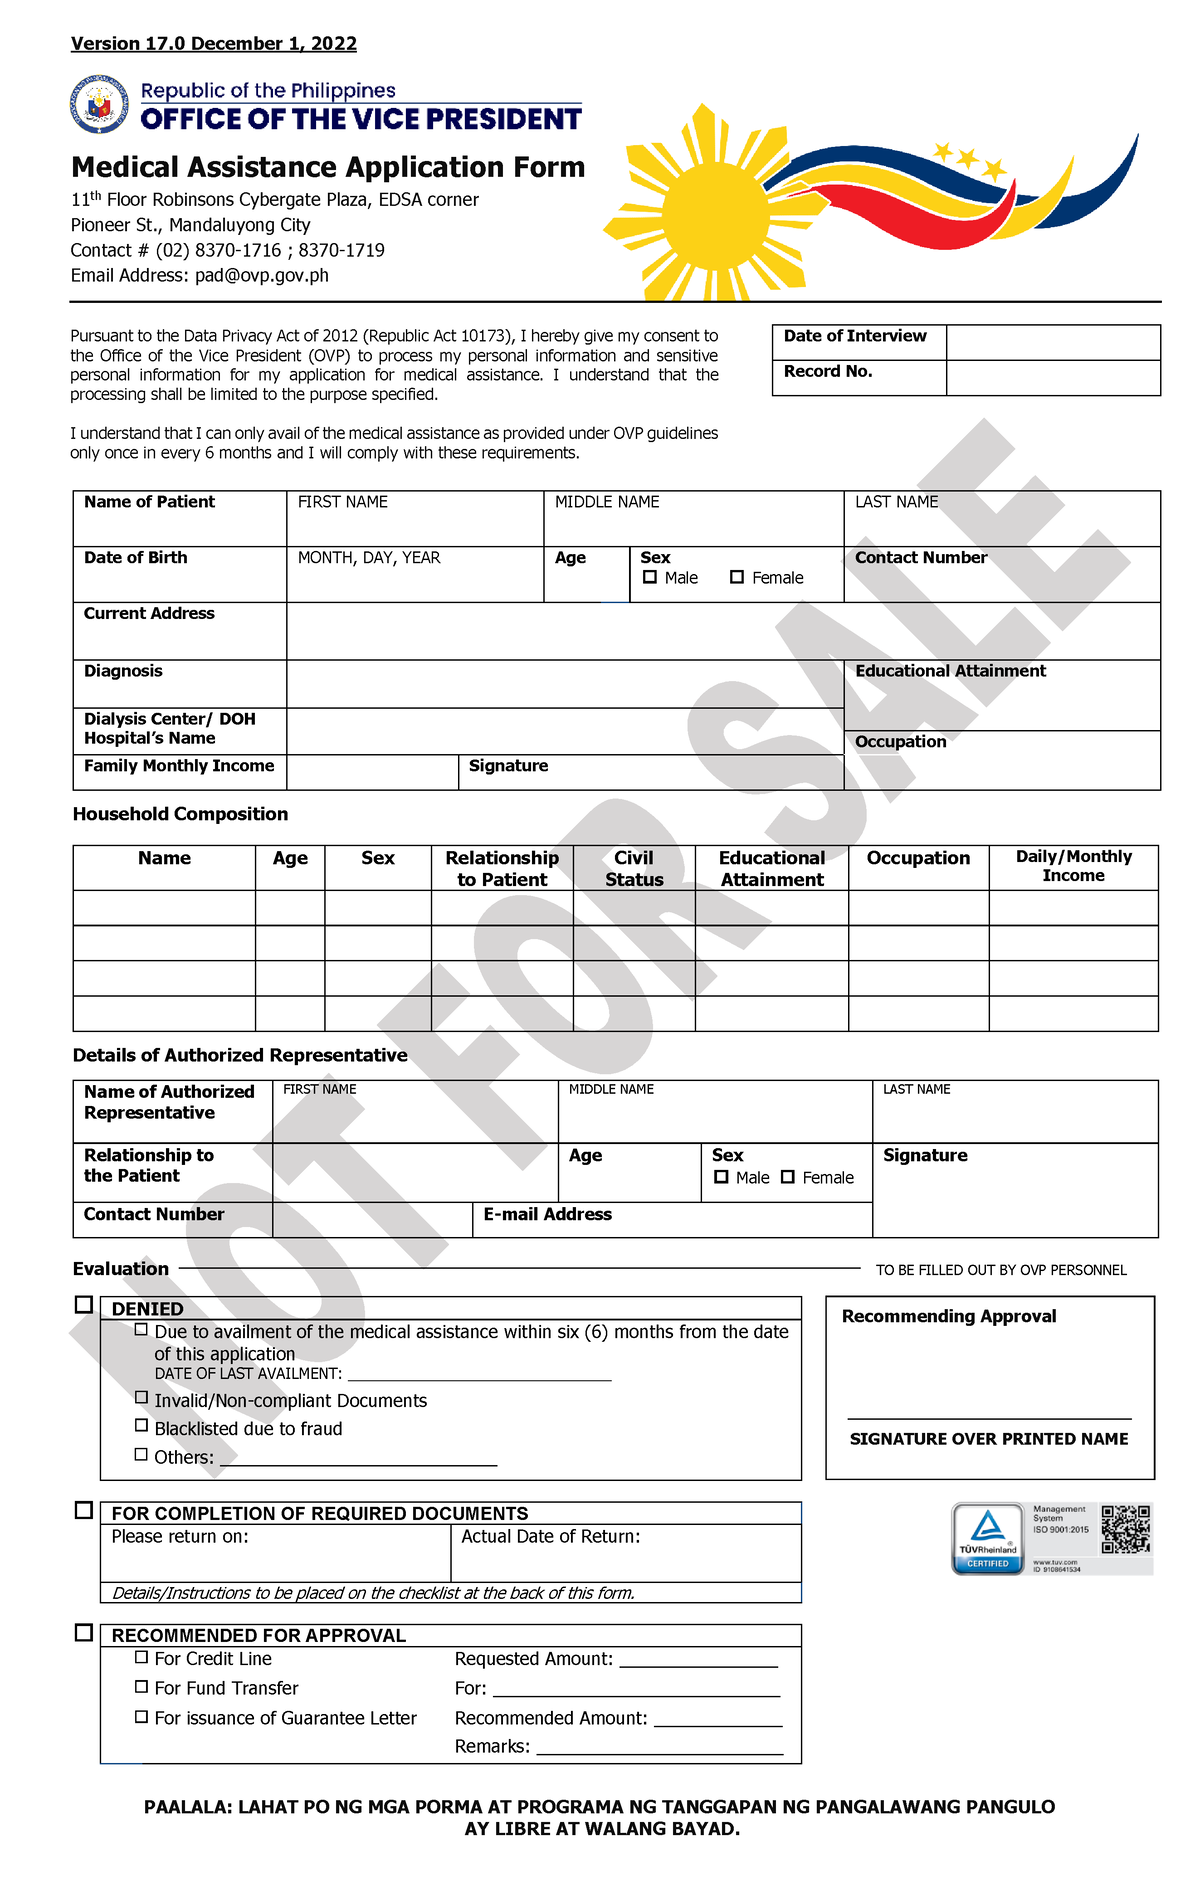 Medical Assistance Application Form Paalala Lahat Po Ng Mga Porma At Programa Ng Tanggapan Ng 7420